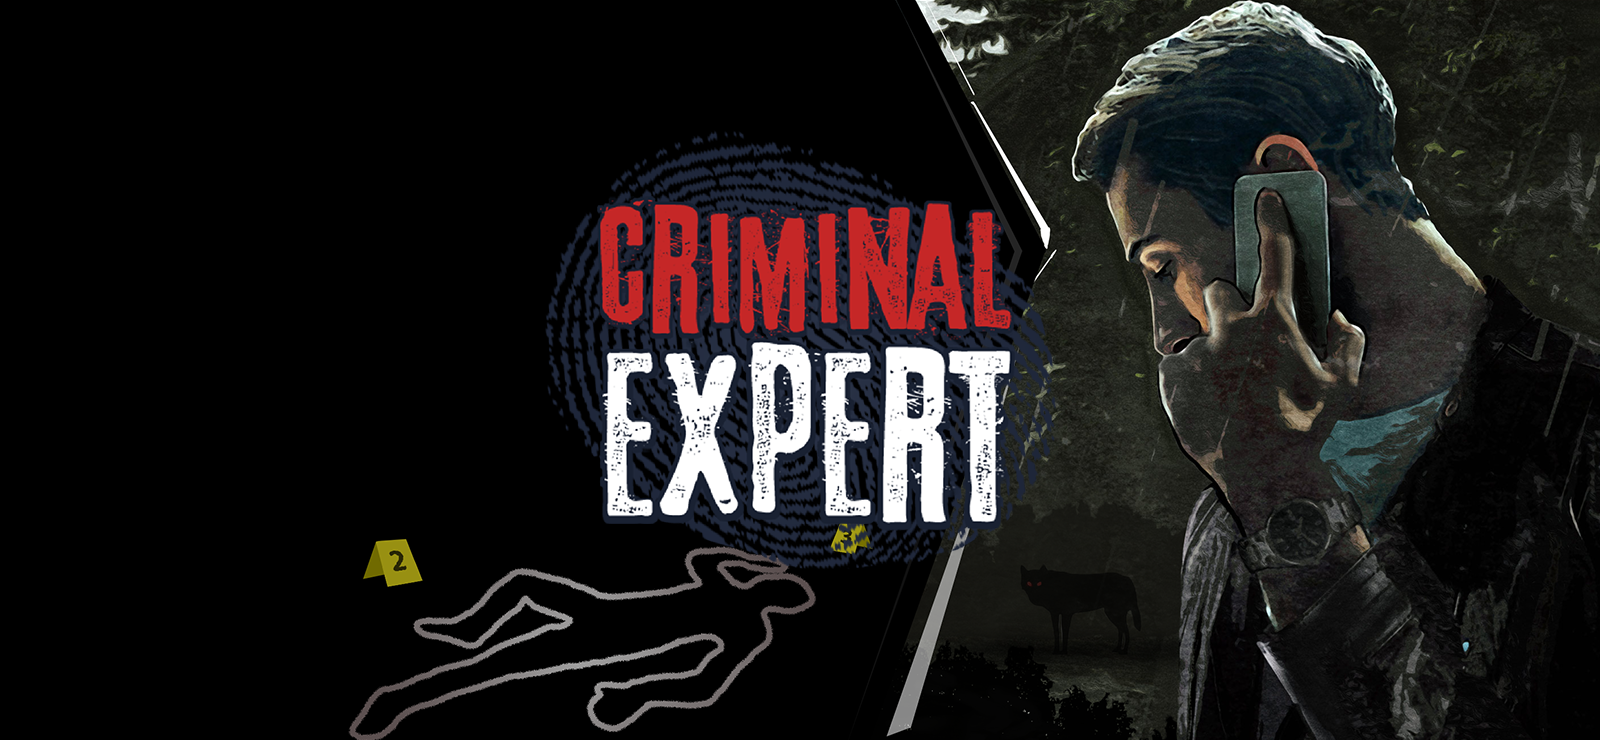 Criminal Expert